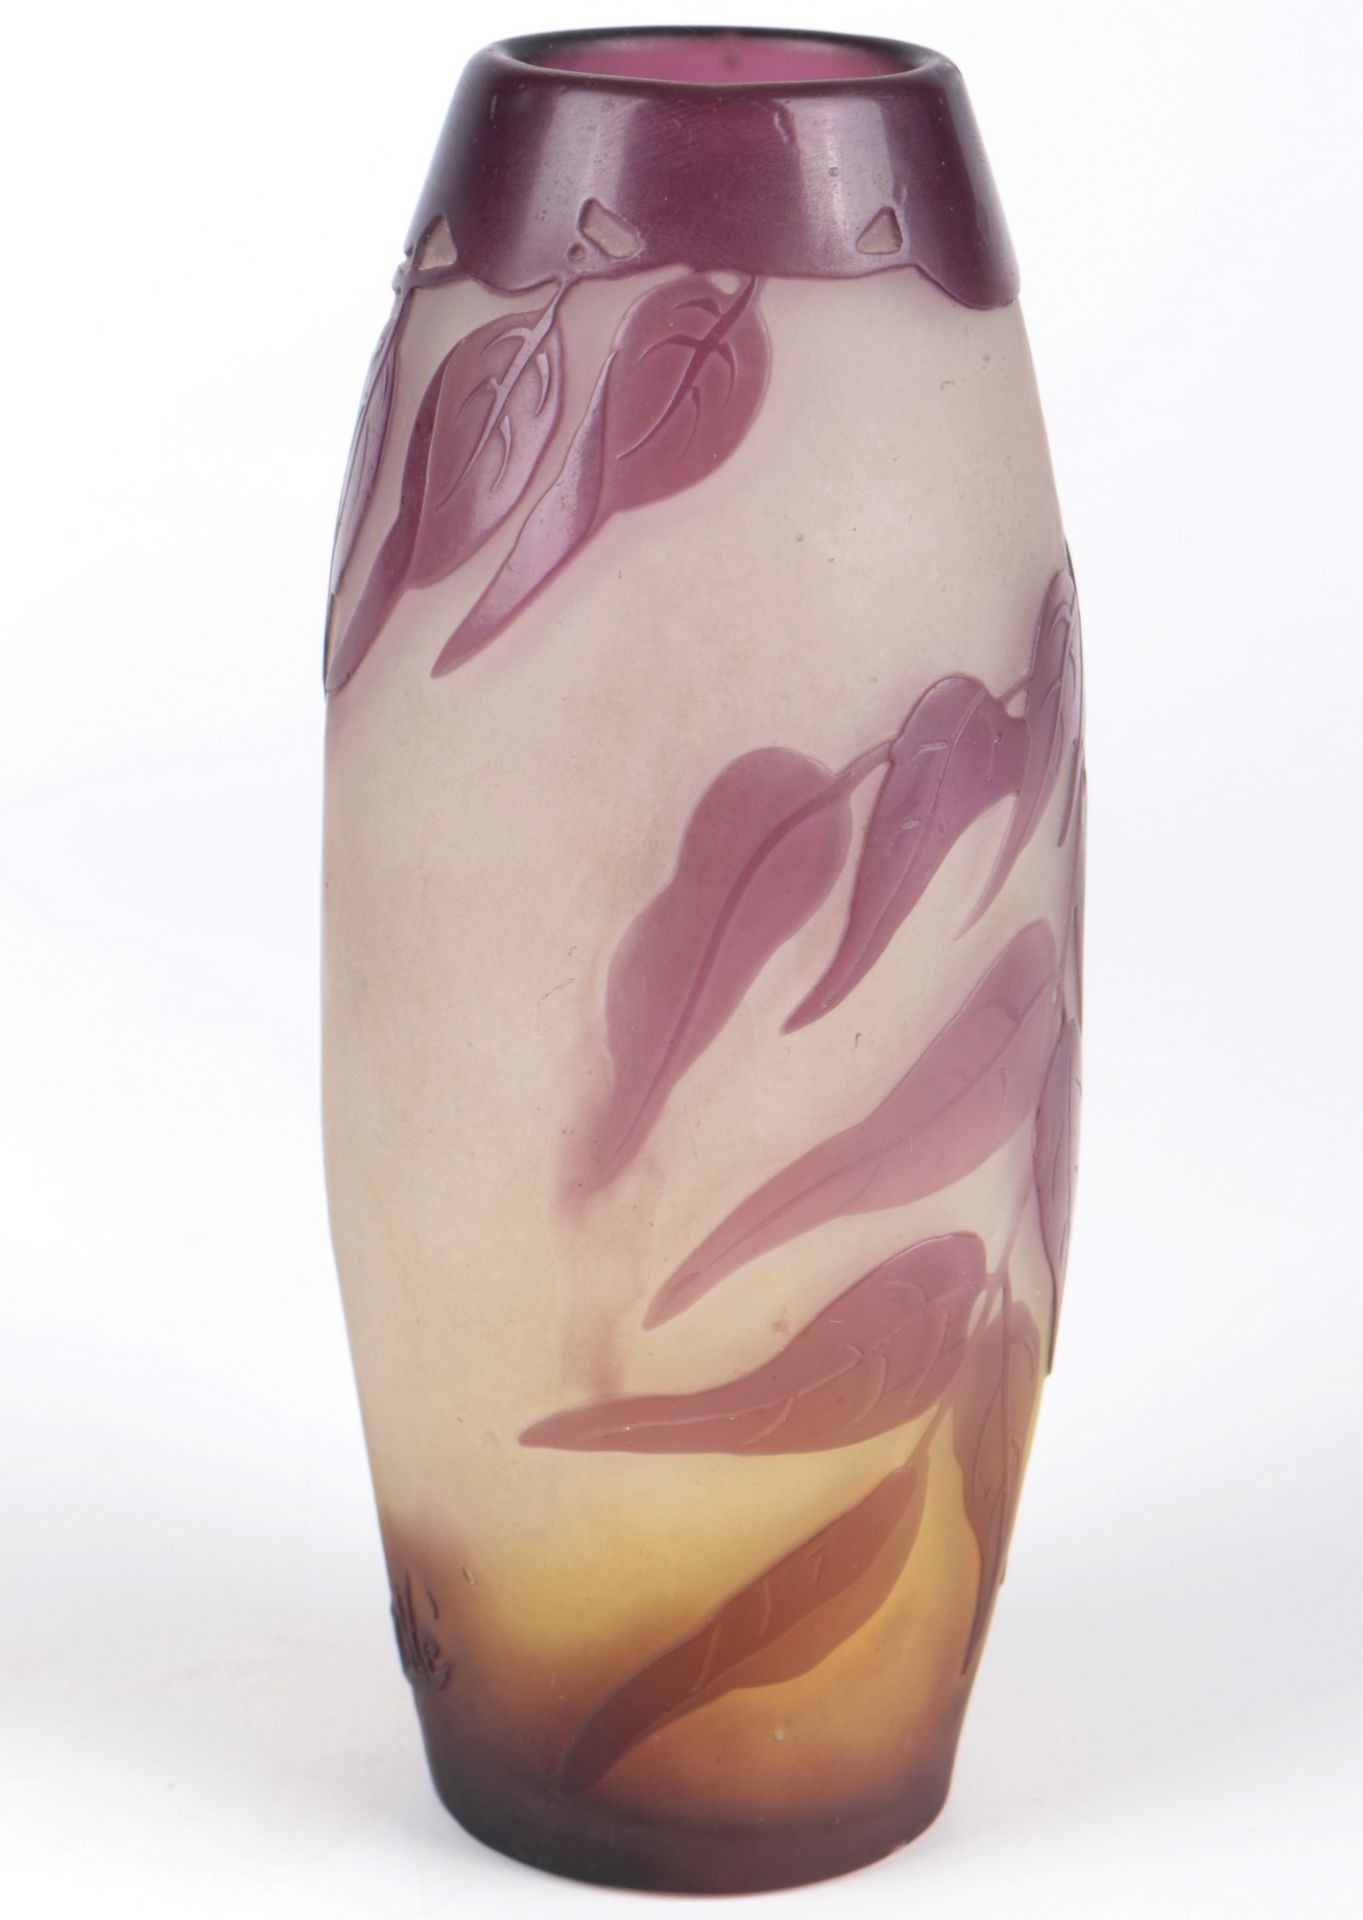 Emile Galle (1846-1904) Jugendstil Vase, french art nouveau glass vase, - Image 3 of 6